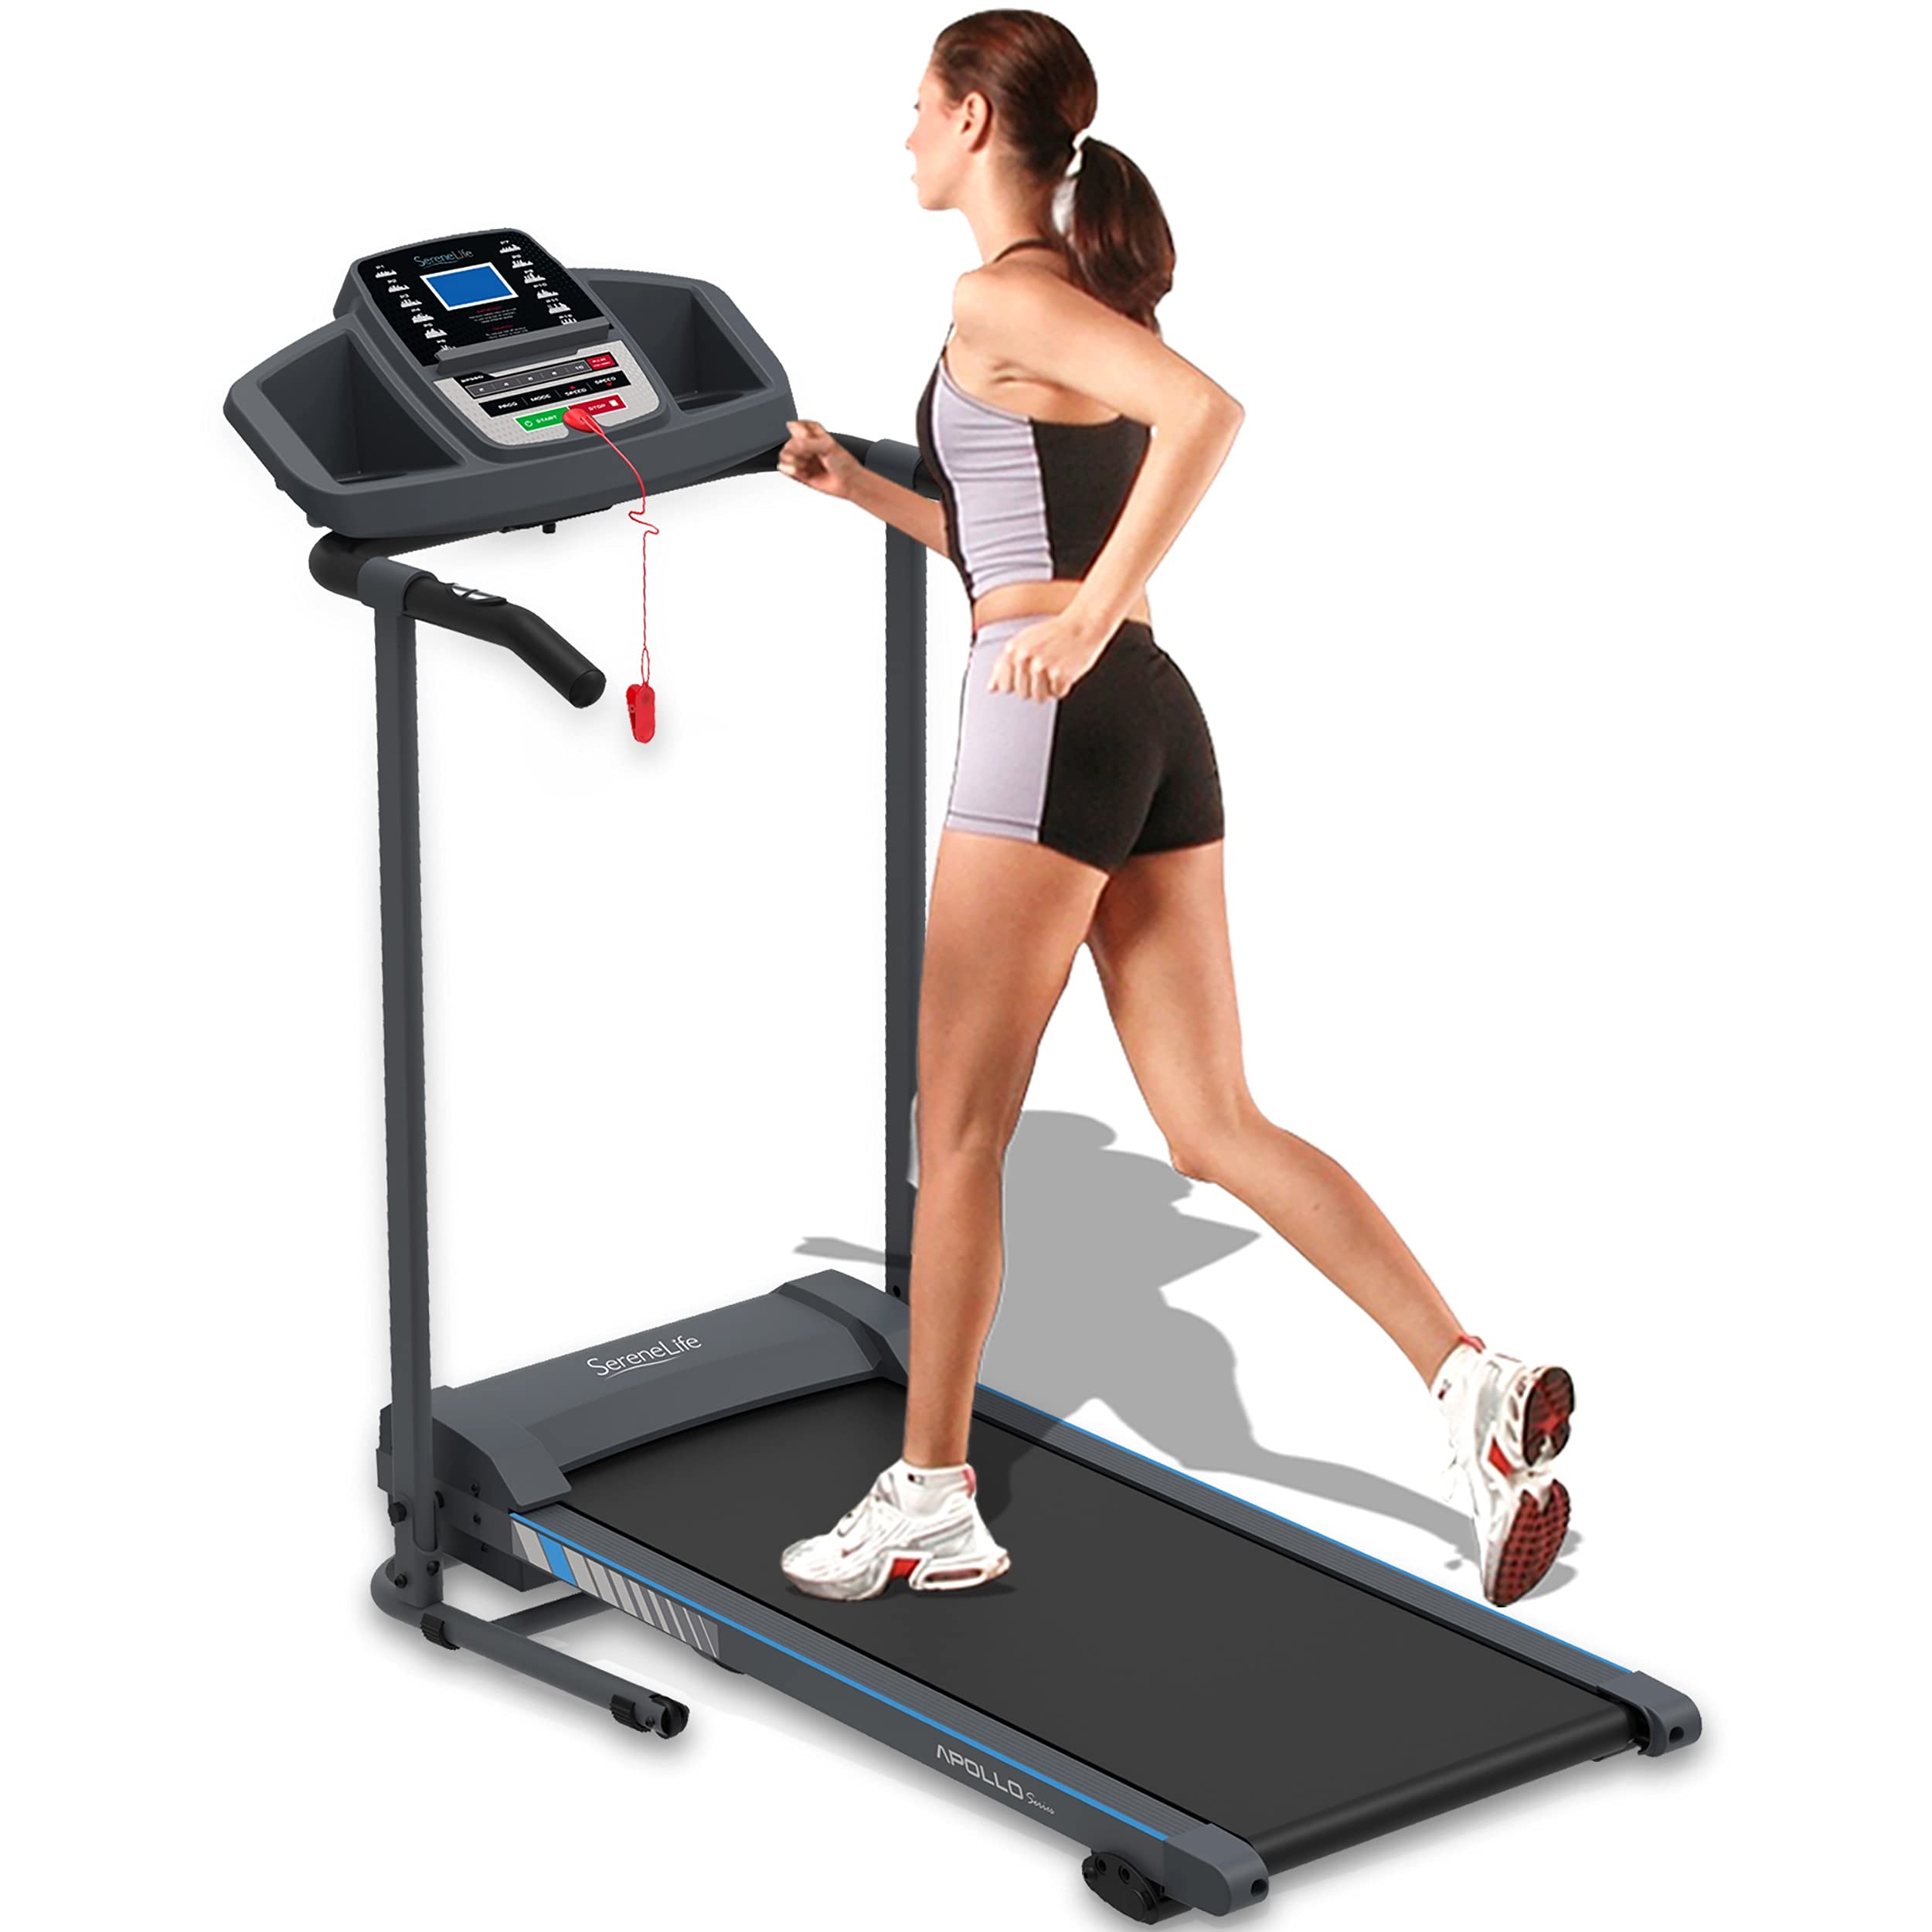  SereneLife Cinta de correr plegable - Equipo de fitness doméstico plegable con pantalla LCD para caminar y correr - Máquina de ejercicio cardiovascular - Programas preestablecidos y ajustables -...